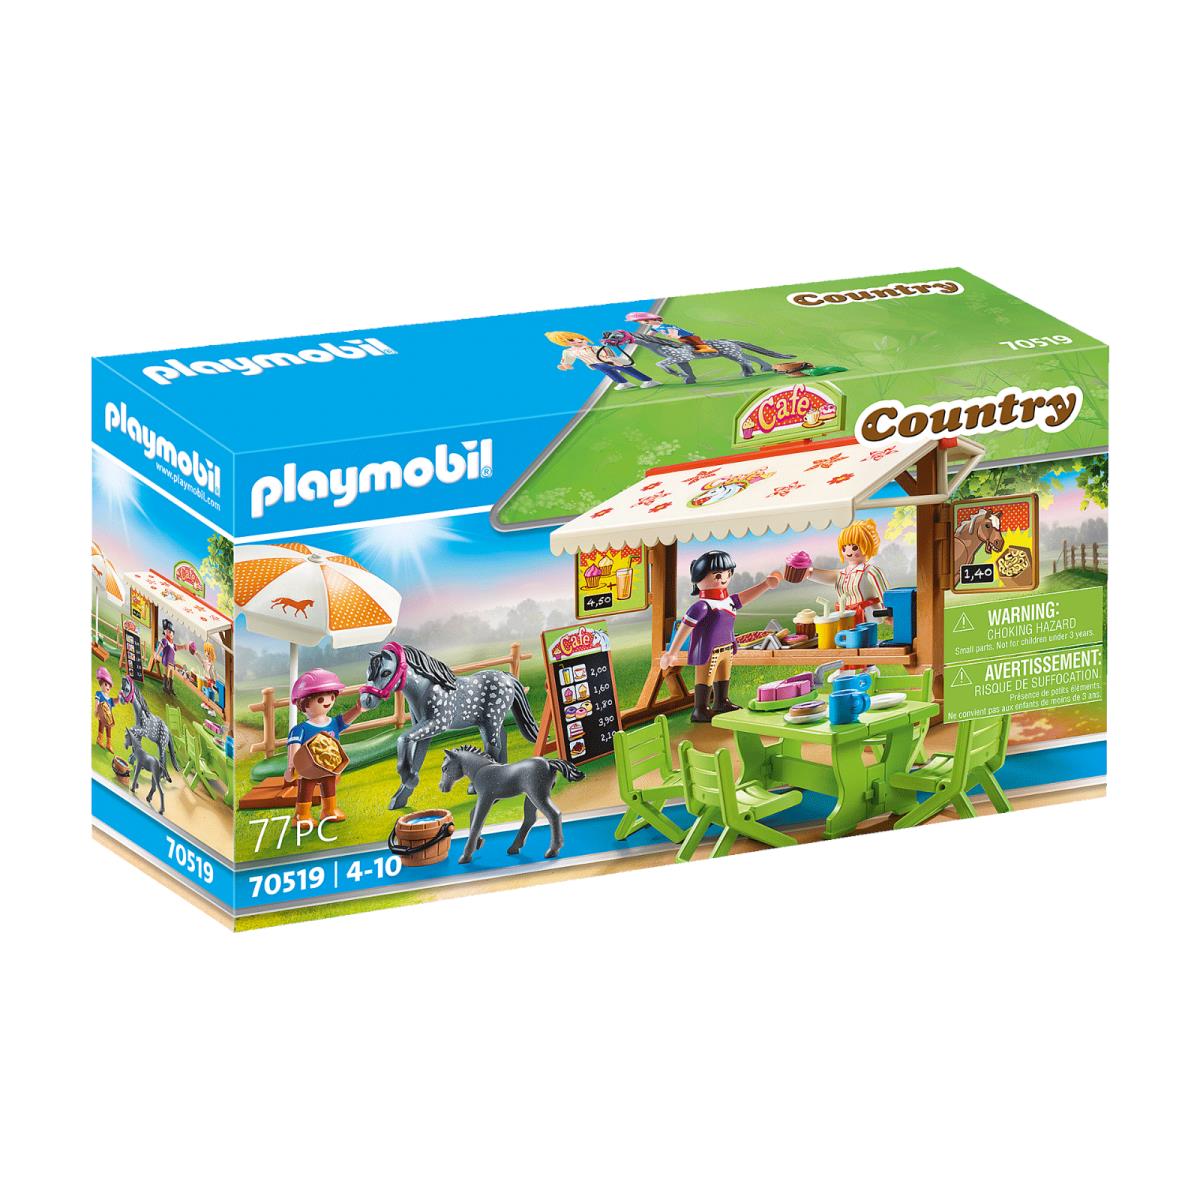 Playmobil Country 70519 Pony Cafe Mib/new